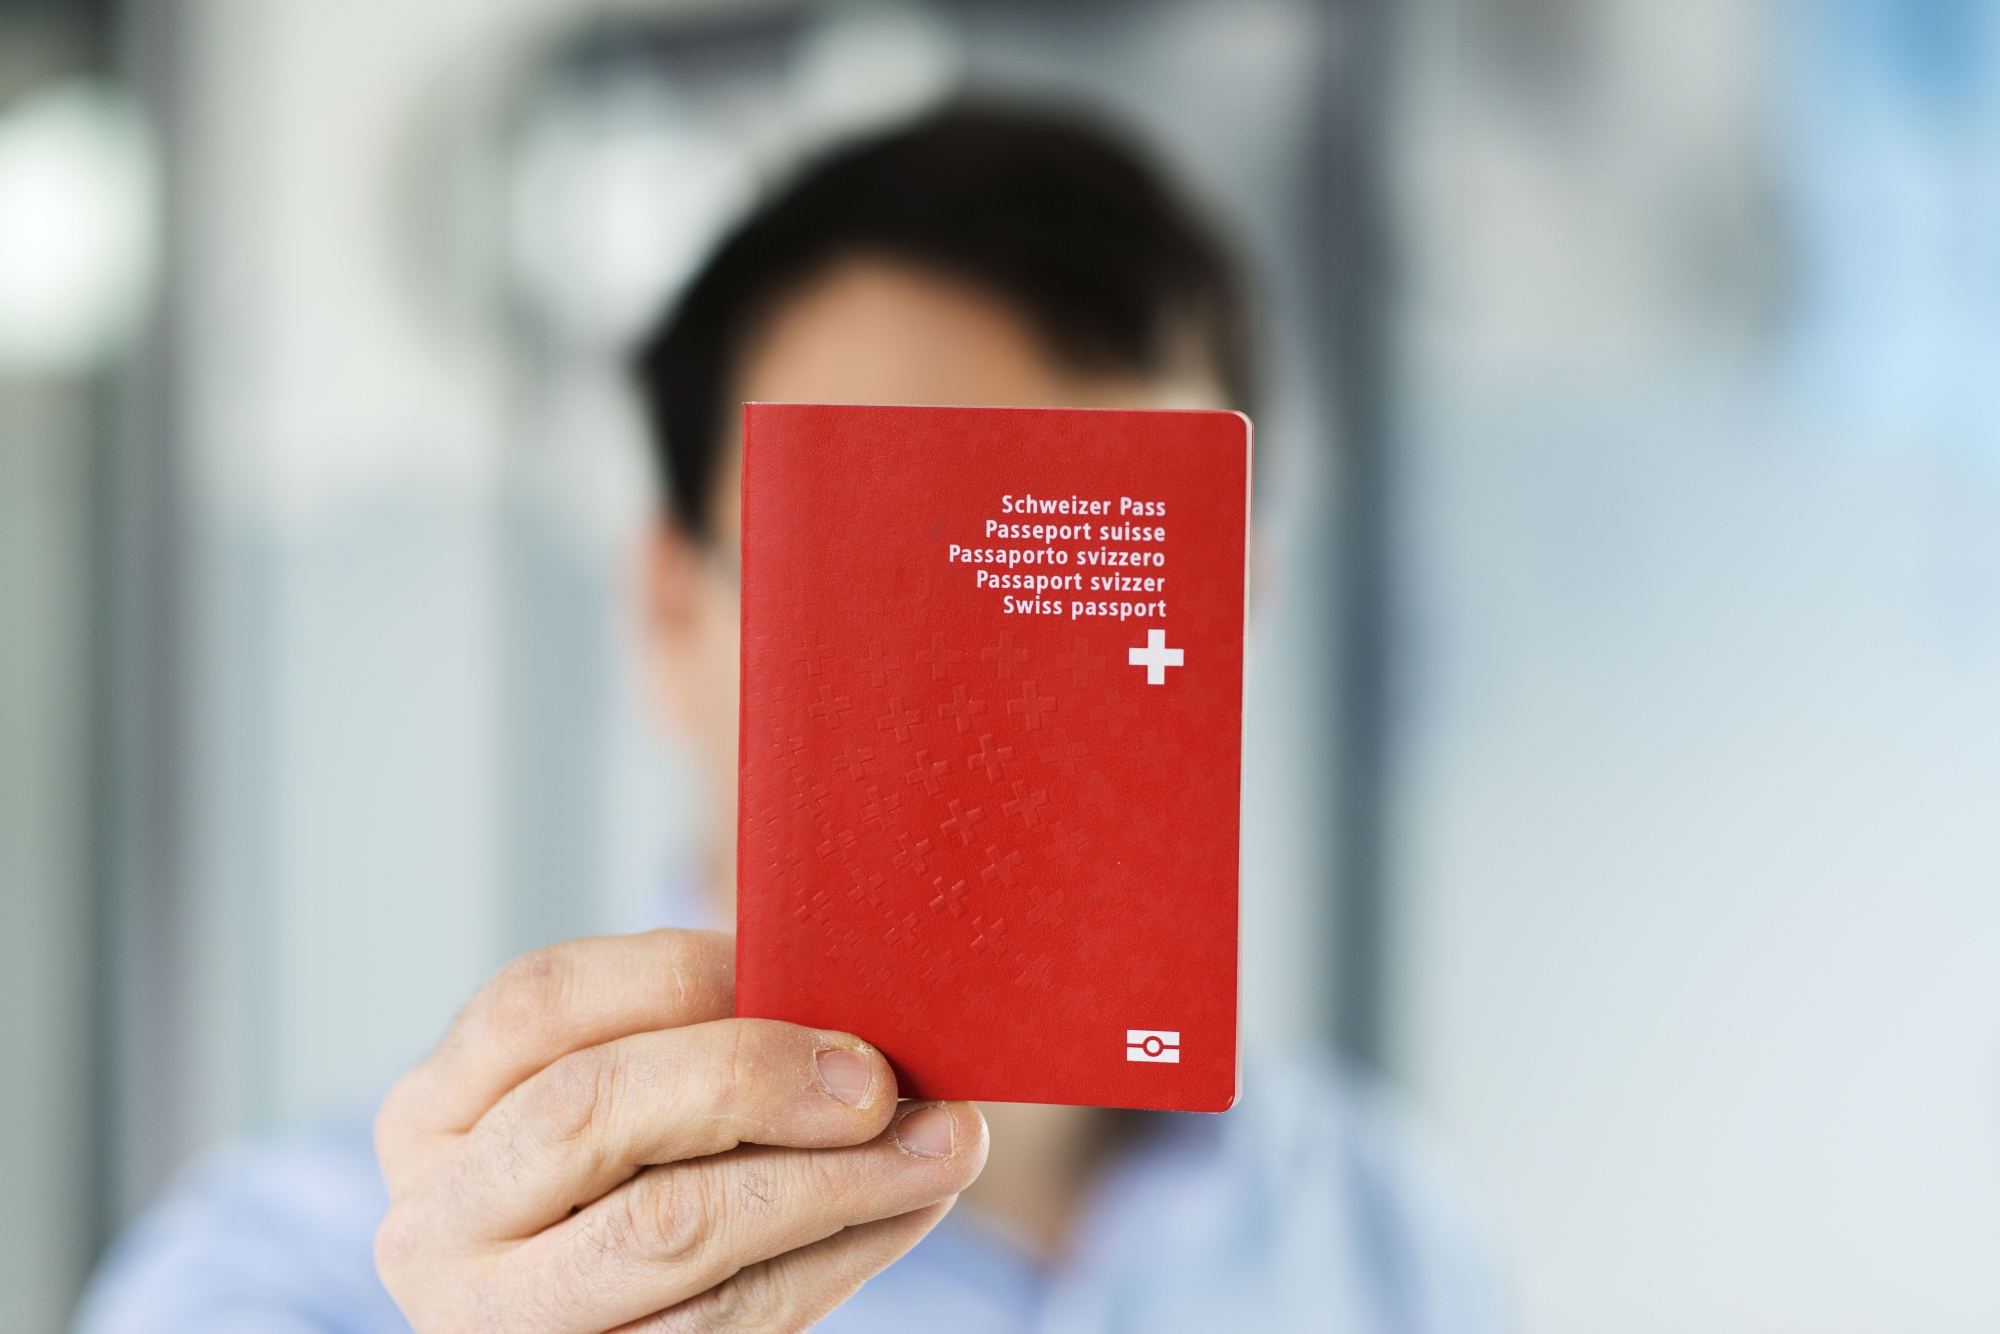 Ein Mann haelt einen biometrischen Schweizer Pass in der Hand, aufgenommen am 10. Februar 2014 in Bern. (KEYSTONE/Christian Beutler)

A man holds a Swiss biometric passport, pictured in Bern, Switzerland, February 10, 2014. (KEYSTONE/Christian Beutler)